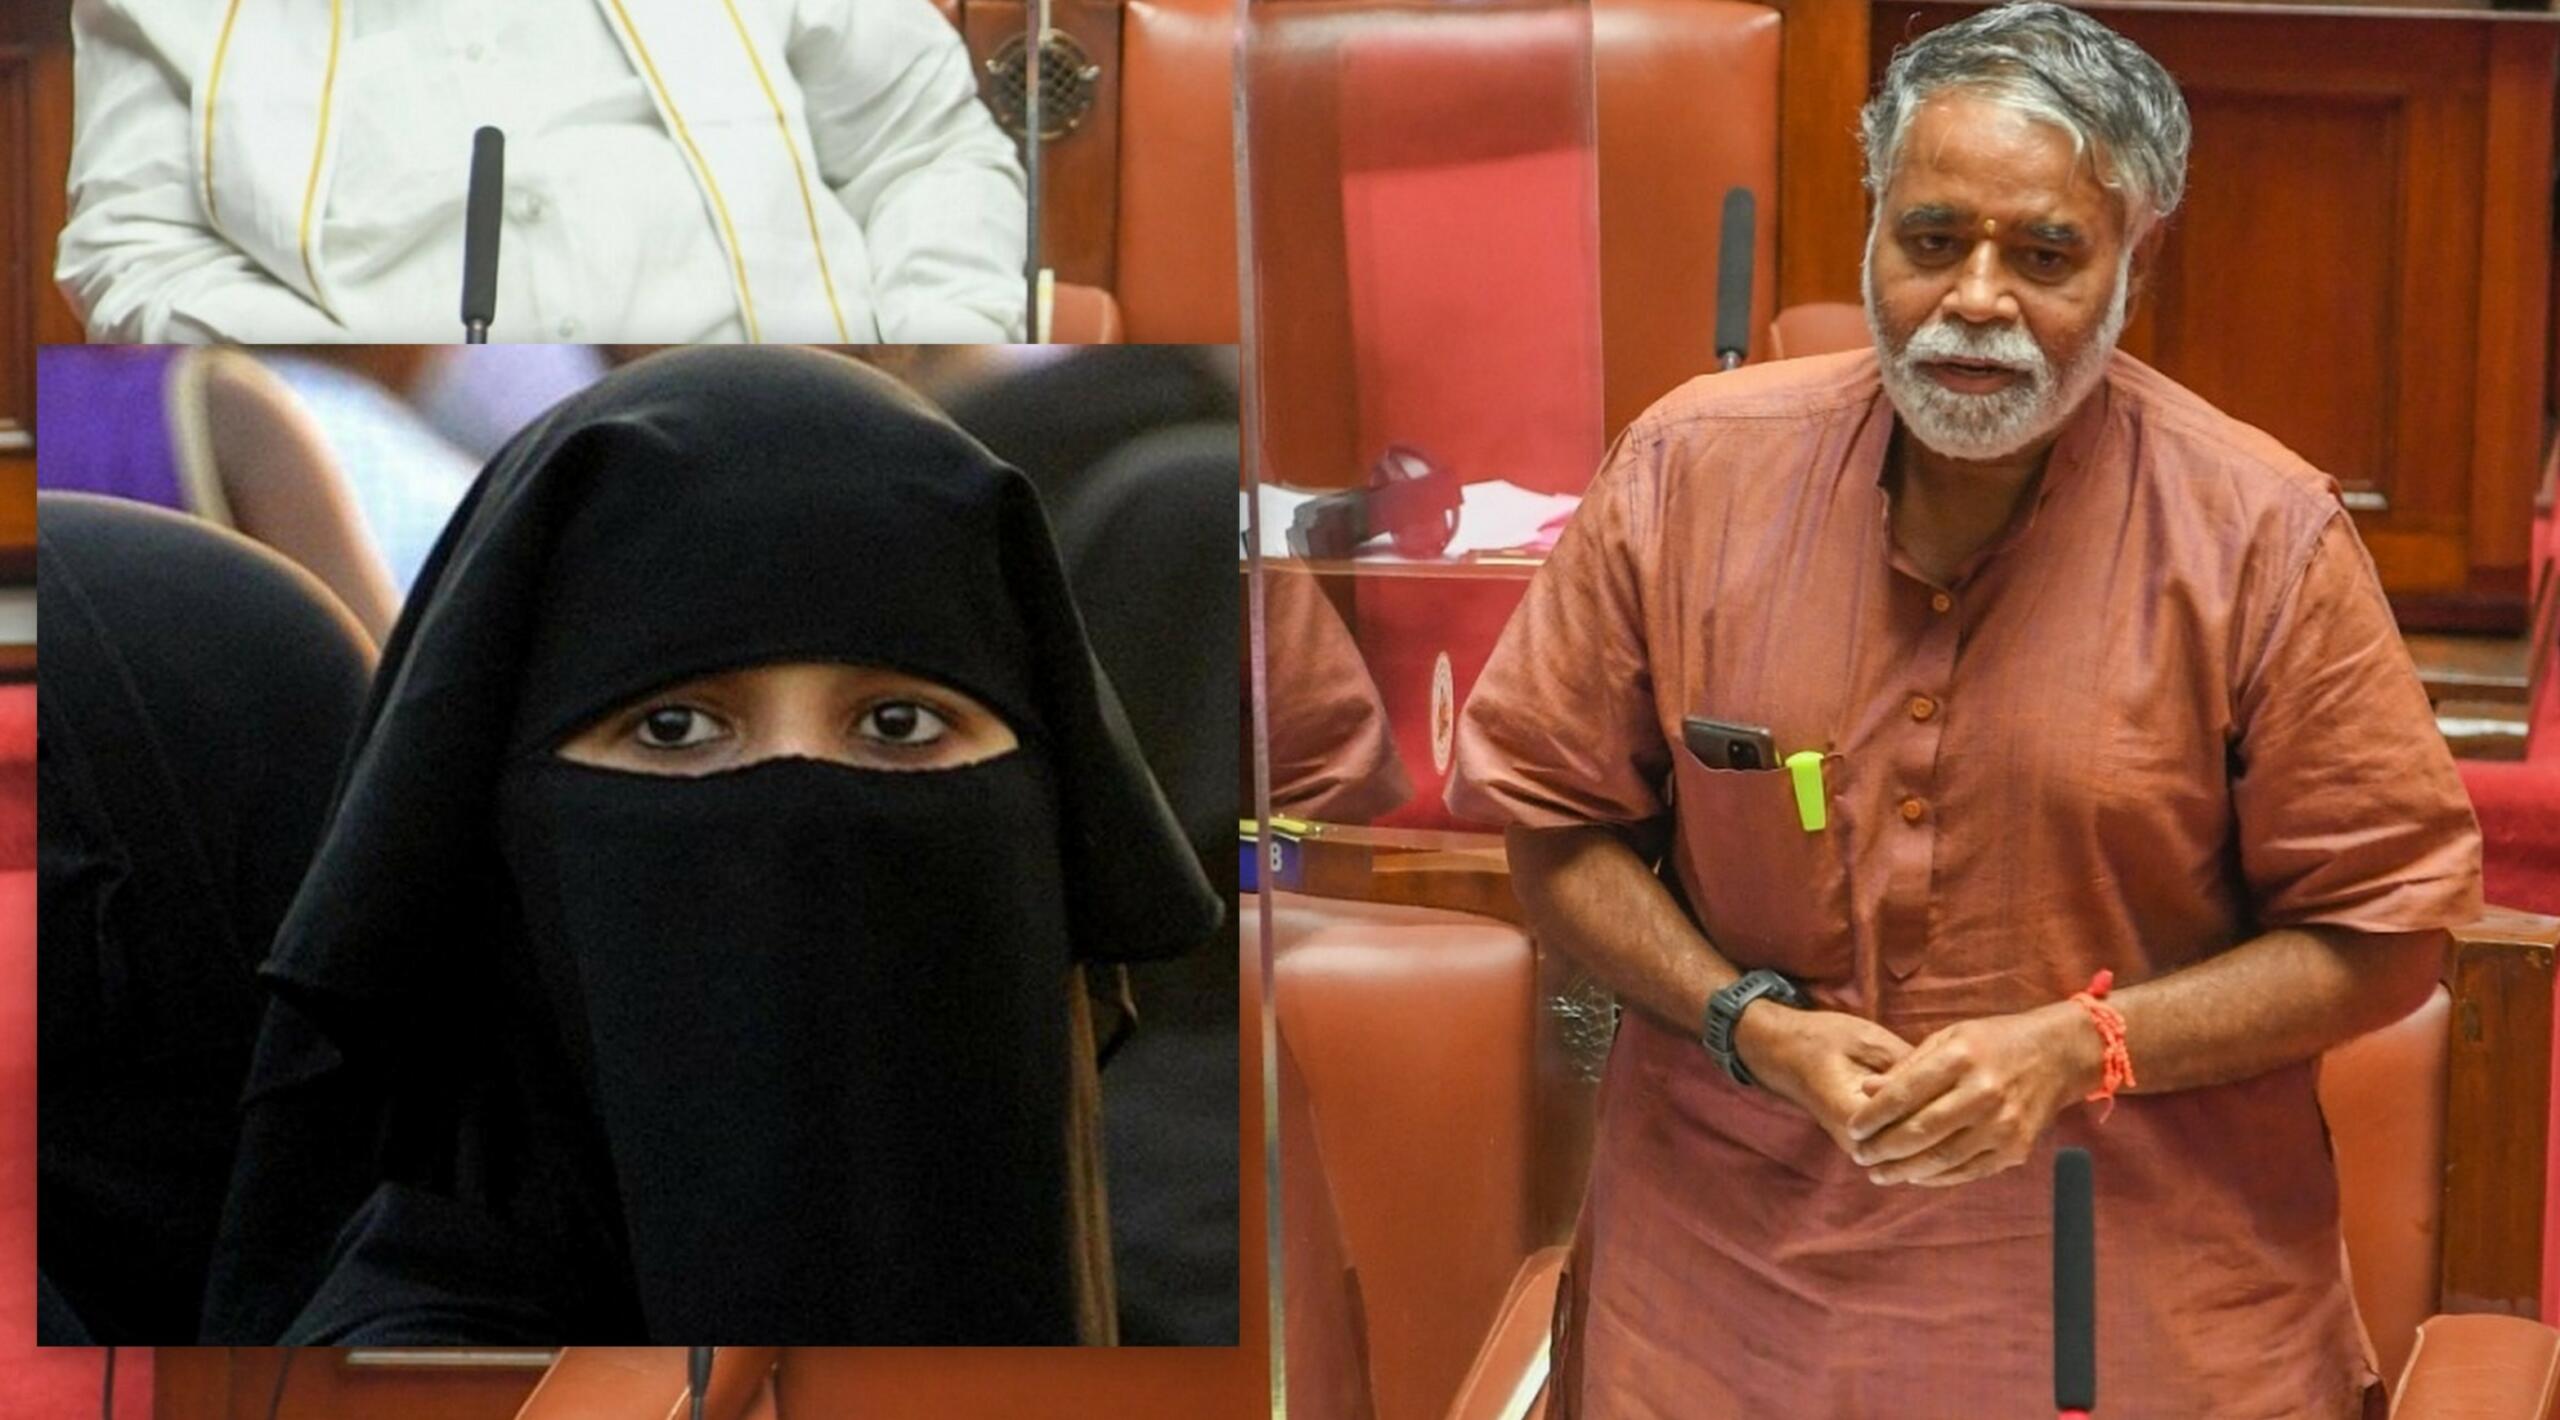 Karnataka hijab row: Don't tell us what to wear, Mahua Moitra tells BJP -  India Today